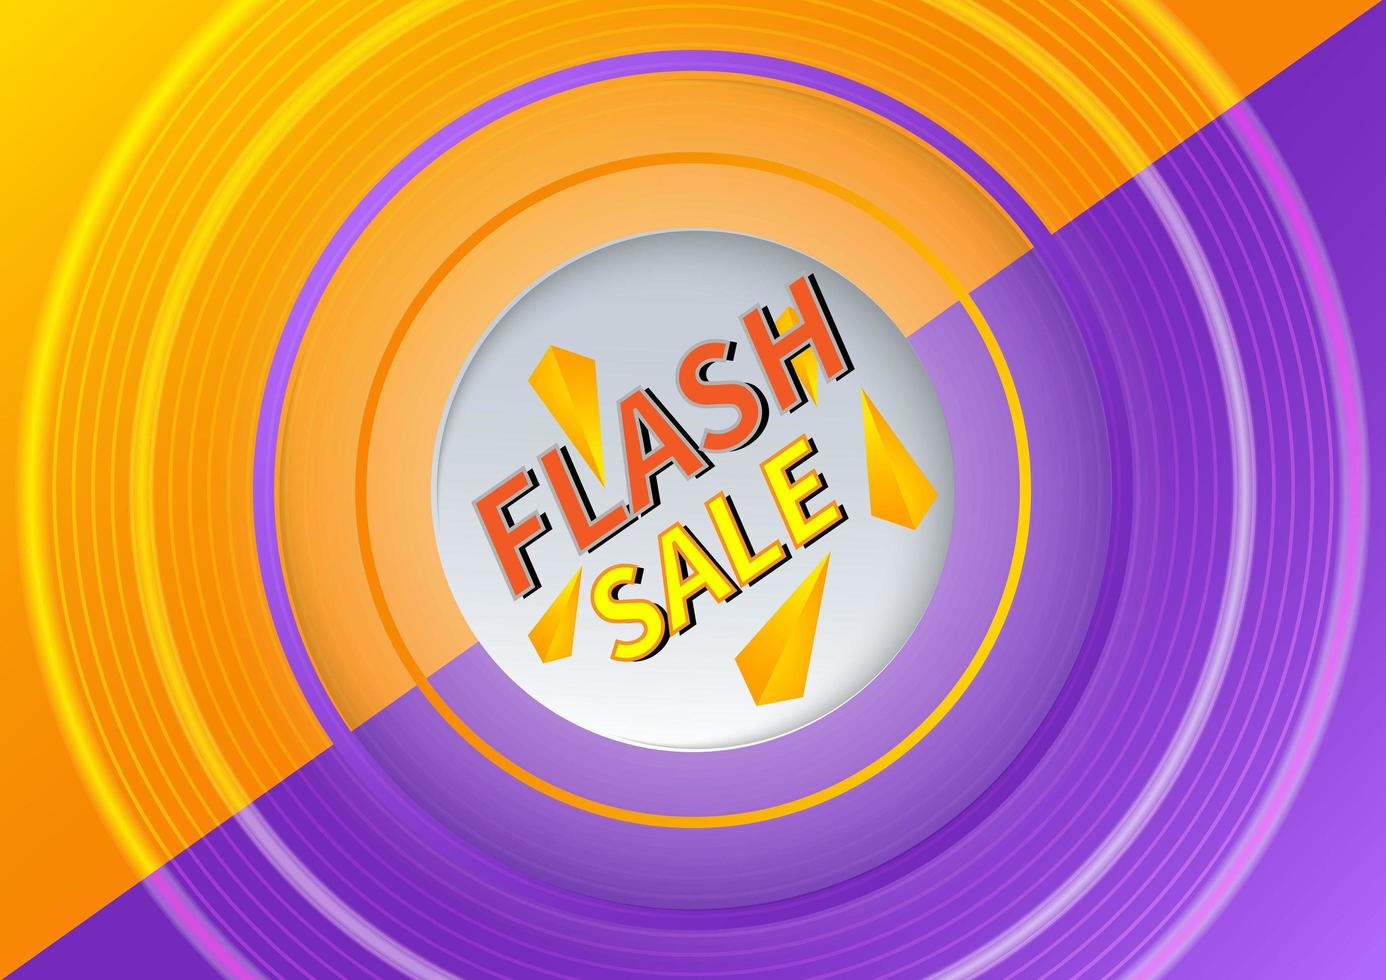 flash försäljning banner designmall erbjuder shopping på orange och lila bakgrund. vektor